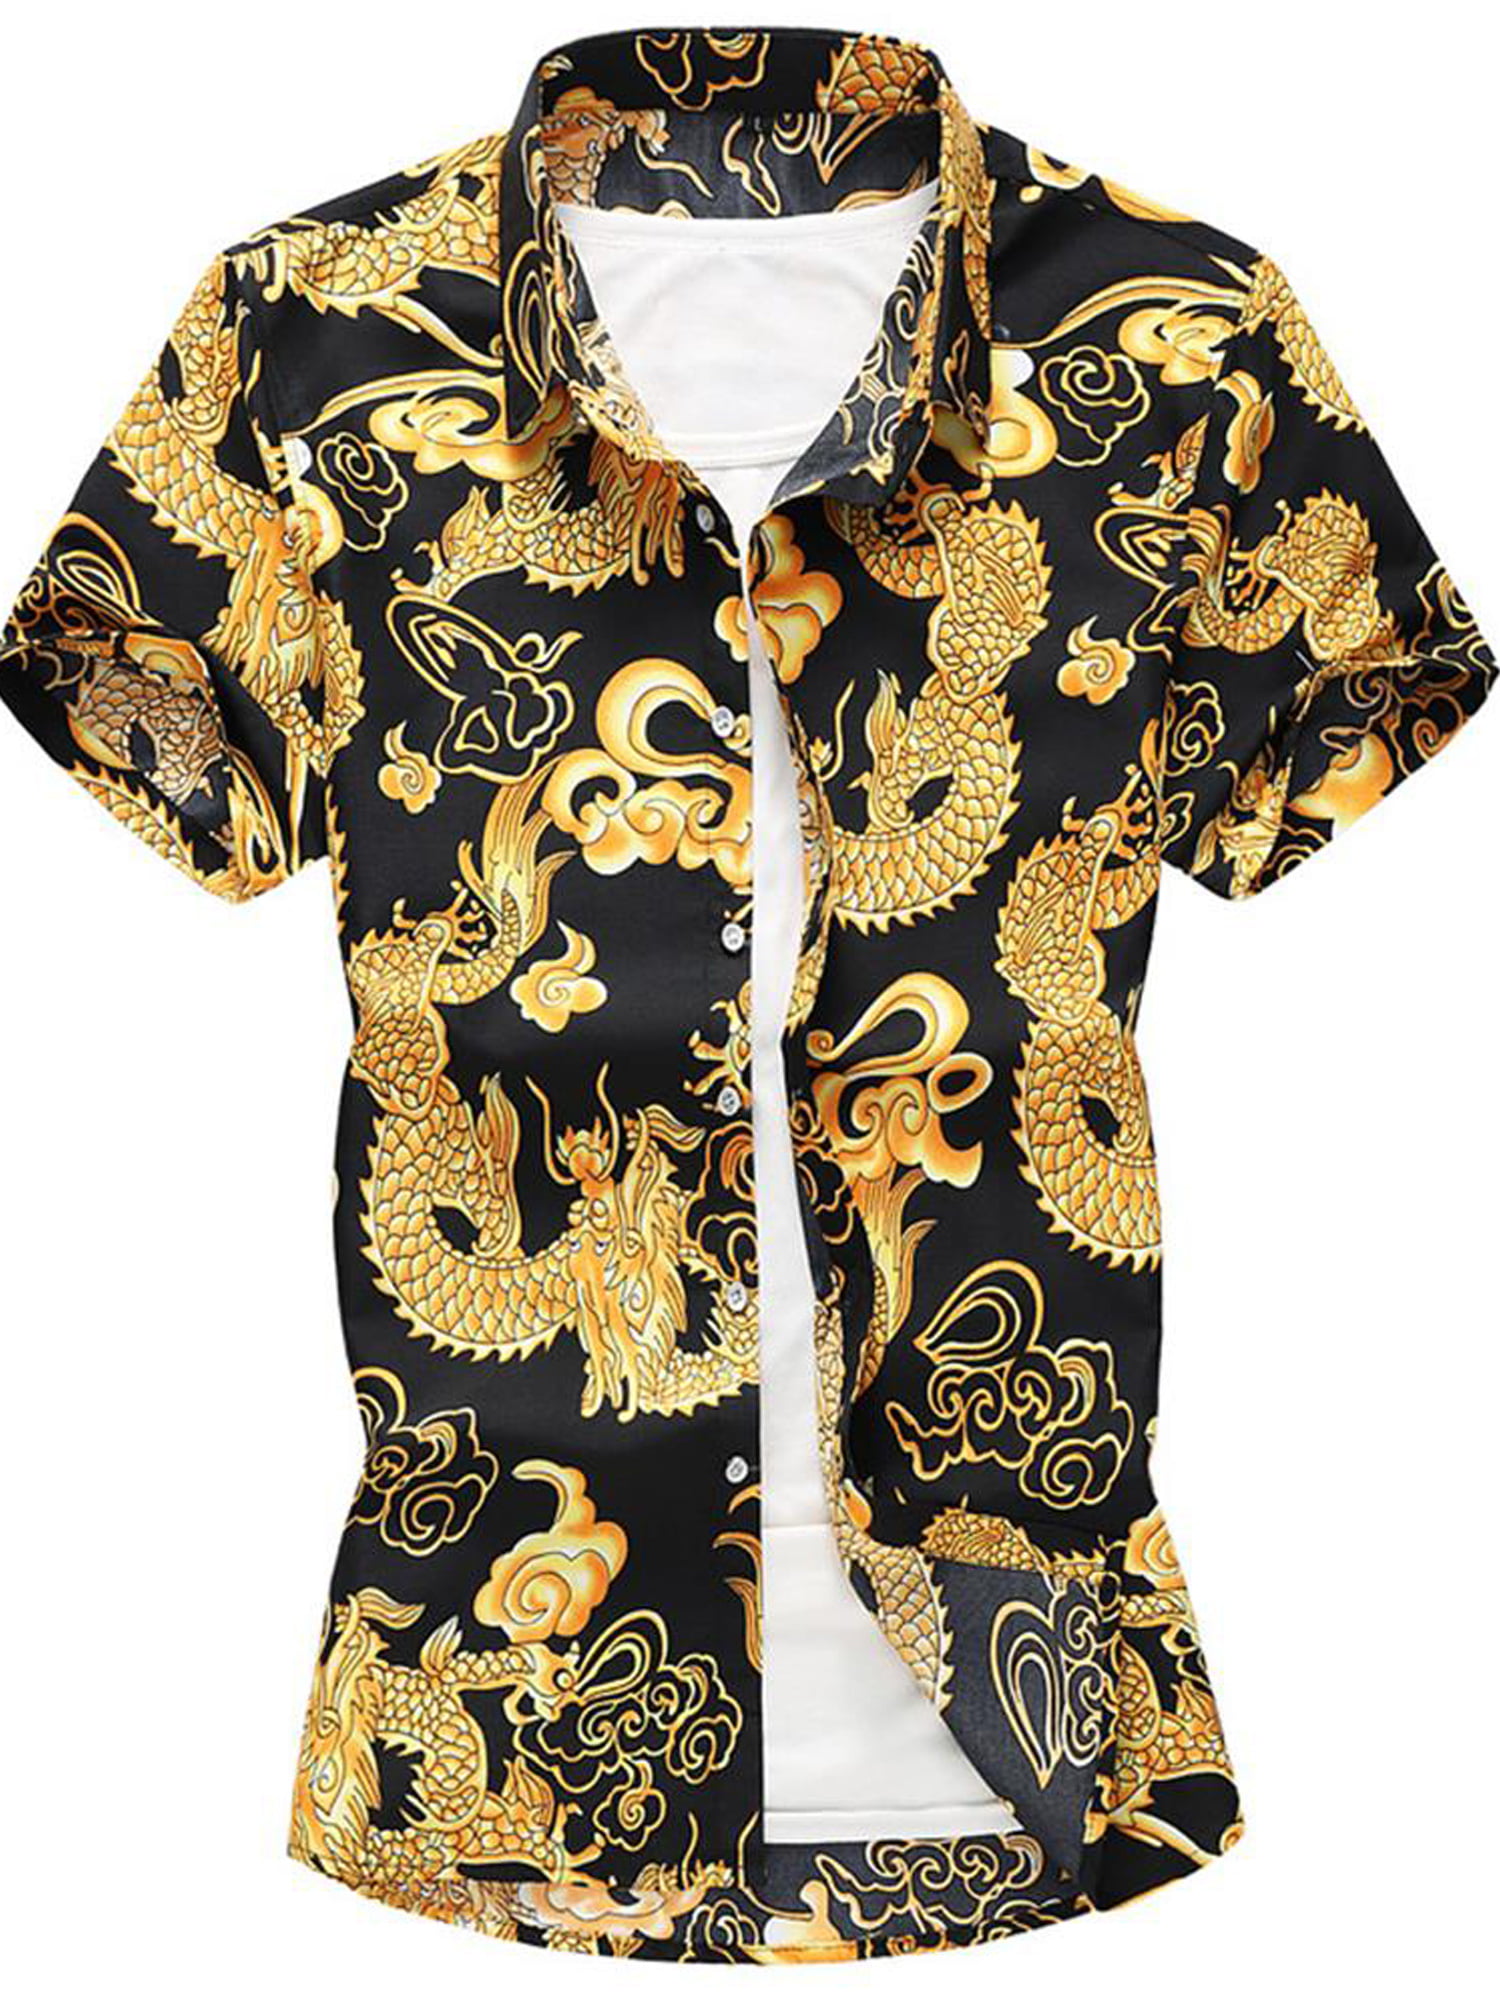 HTOOHTOOH Men Dragon Printed Short Sleeve Button Down Dress Shirt 